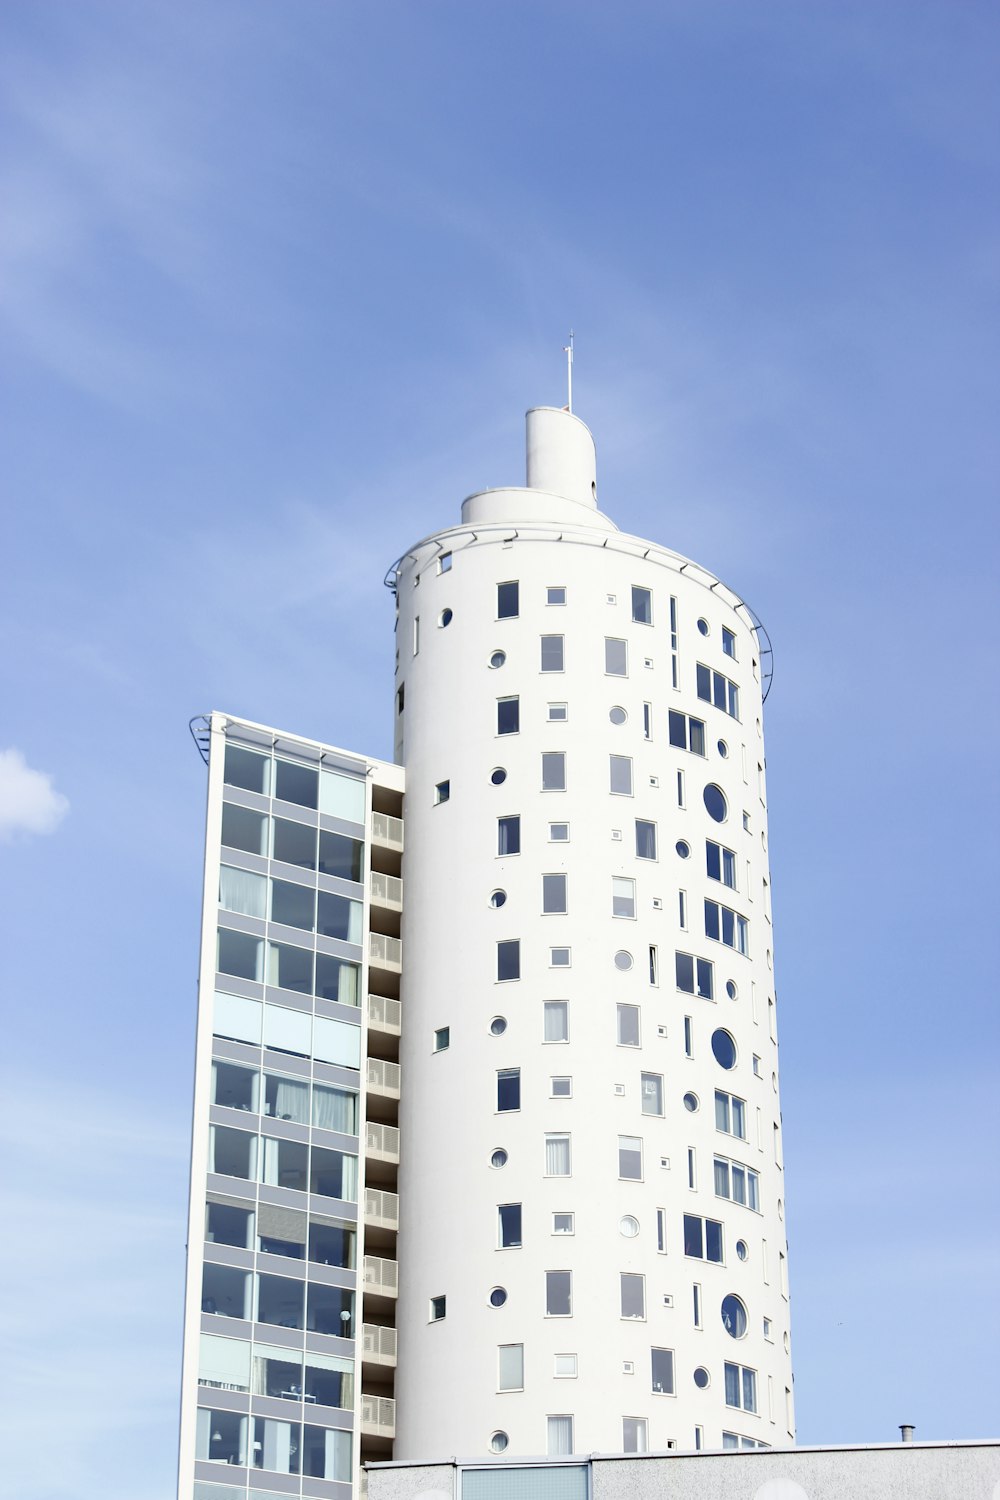 Edificio de la torre blanca bajo el cielo azul y blanco durante el día